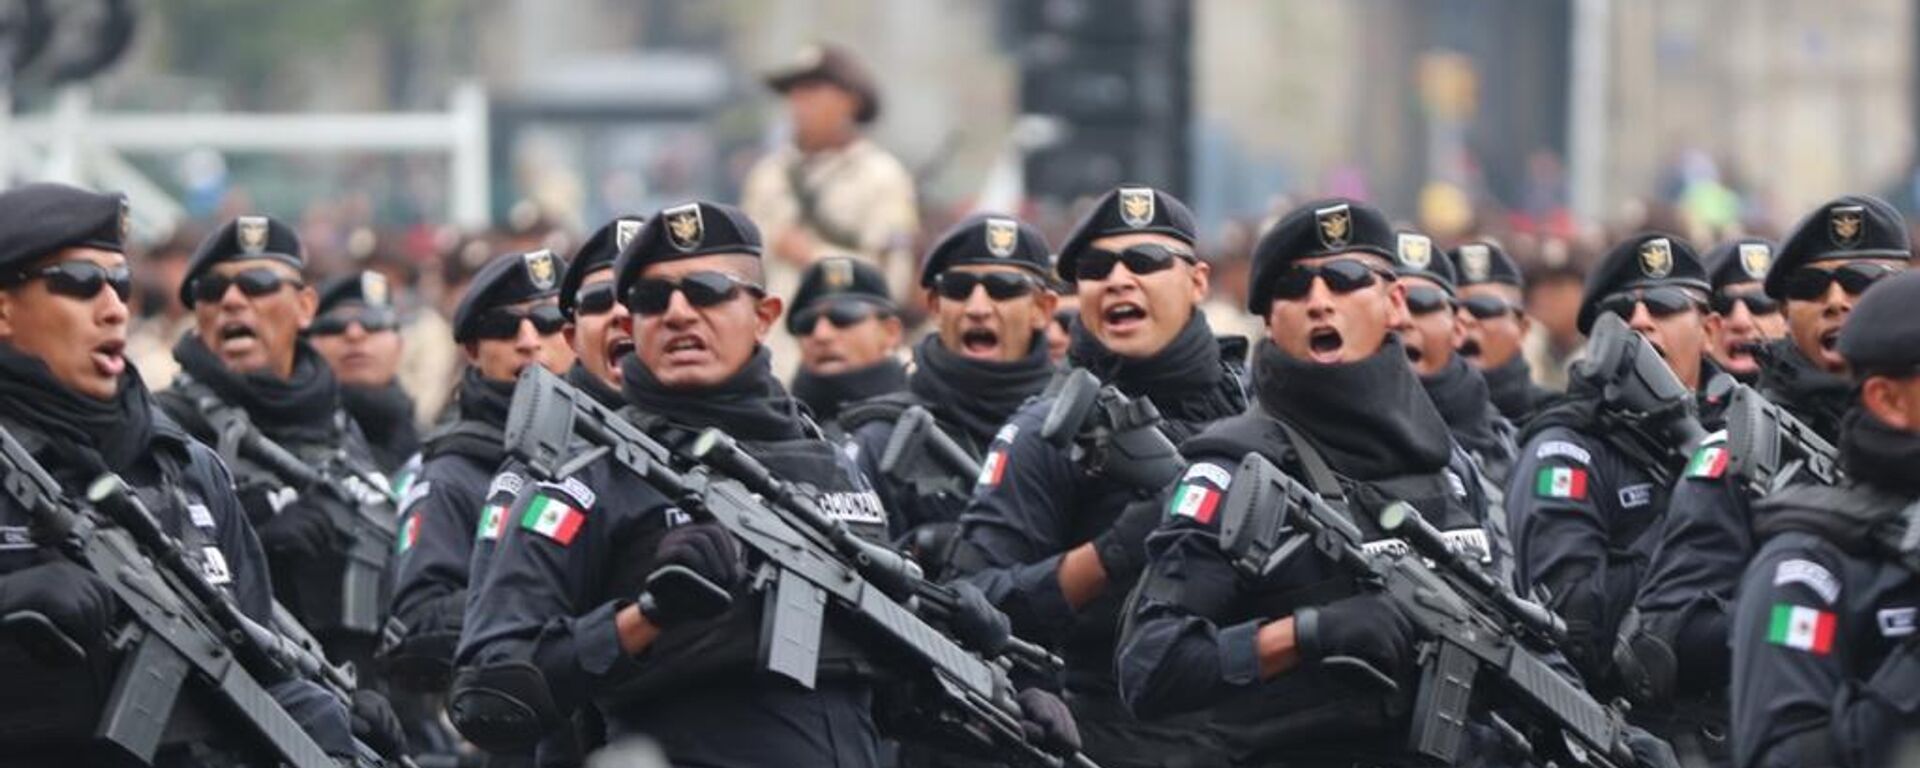 Elementos de la Guardia Nacional de México marchan durante el desfile conmemorativo por el Día de la Revolución mexicana, el 20 de noviembre de 2022 - Sputnik Mundo, 1920, 25.11.2022